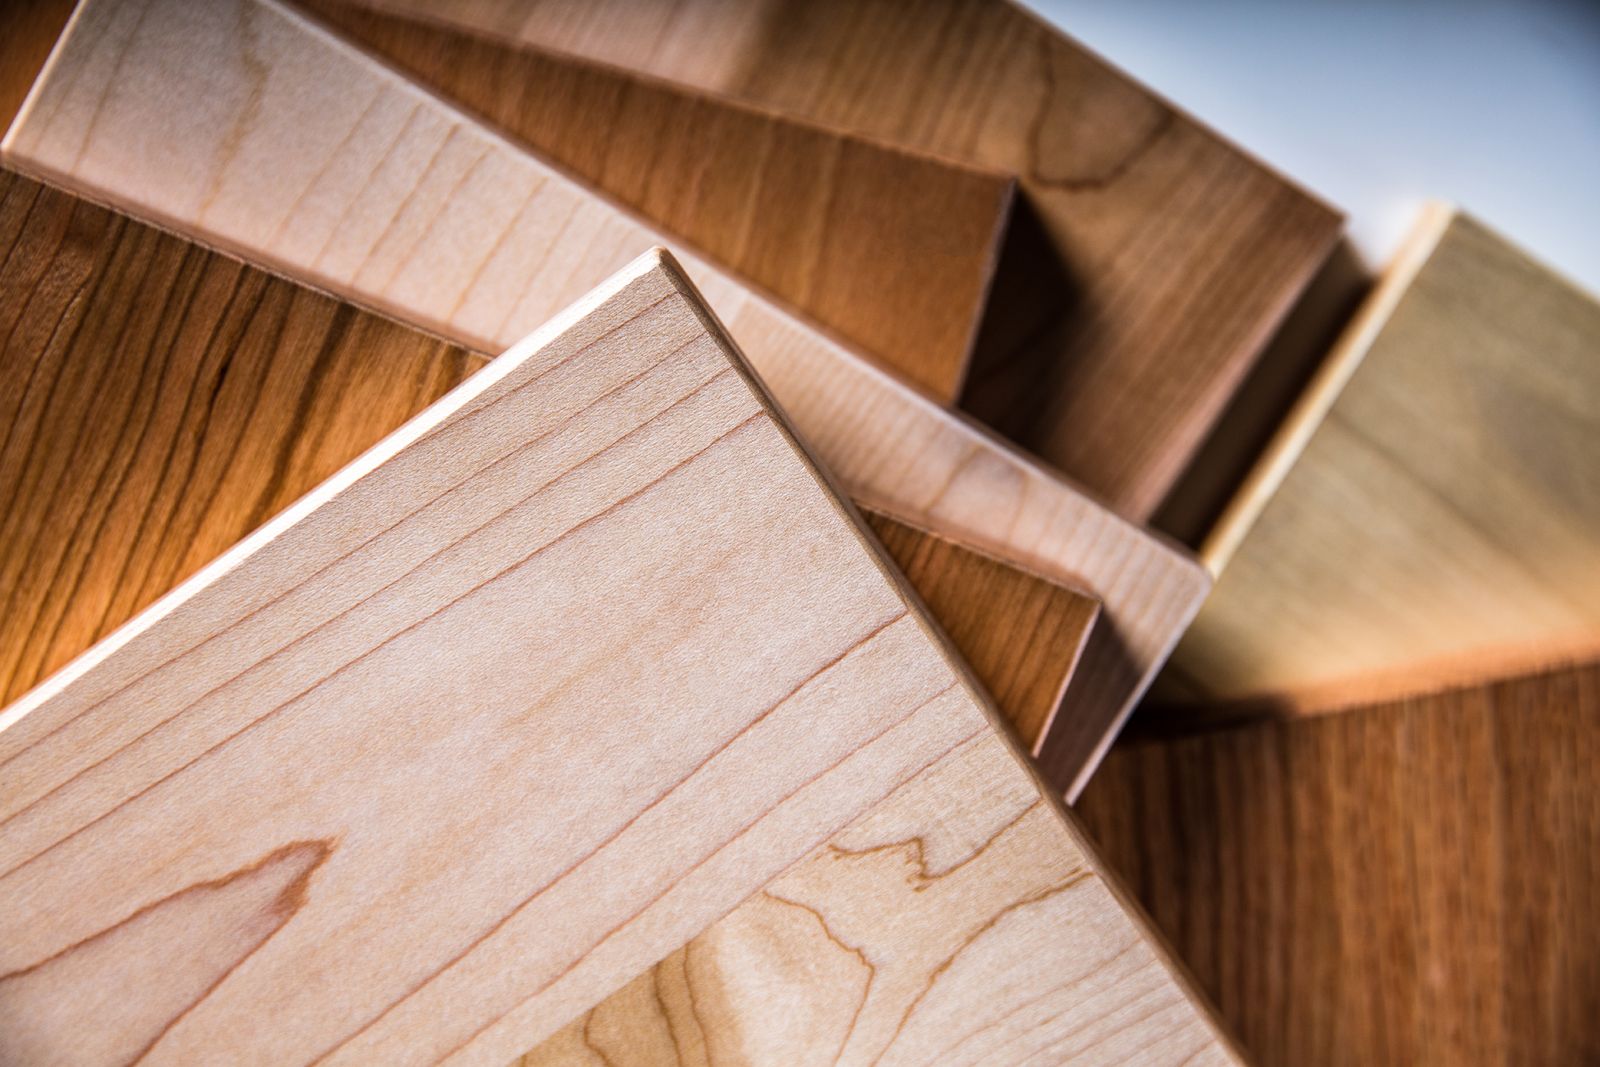 Sản phẩm gỗ dán từ nguyên liệu gỗ cứng (hardwood plywood) xuất khẩu sang Mỹ cần hết sức cẩn trọng